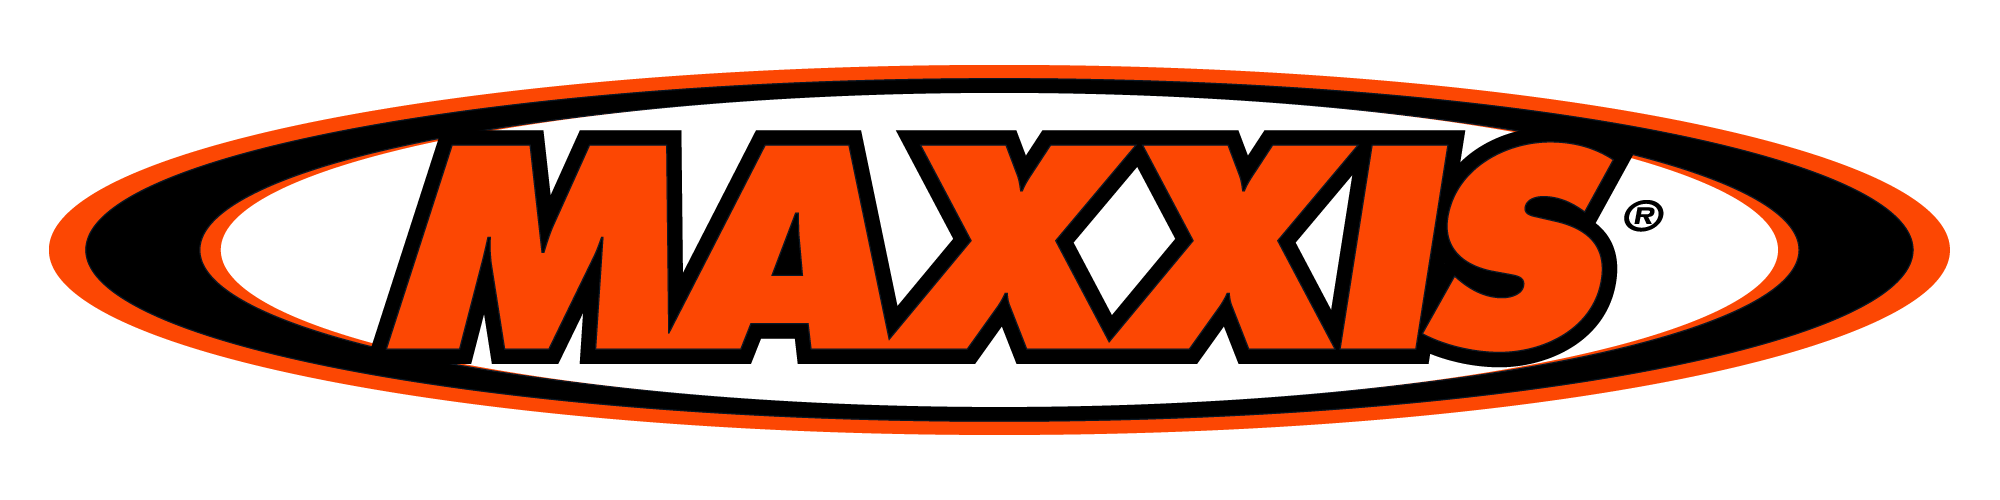 مکسس - Maxxis